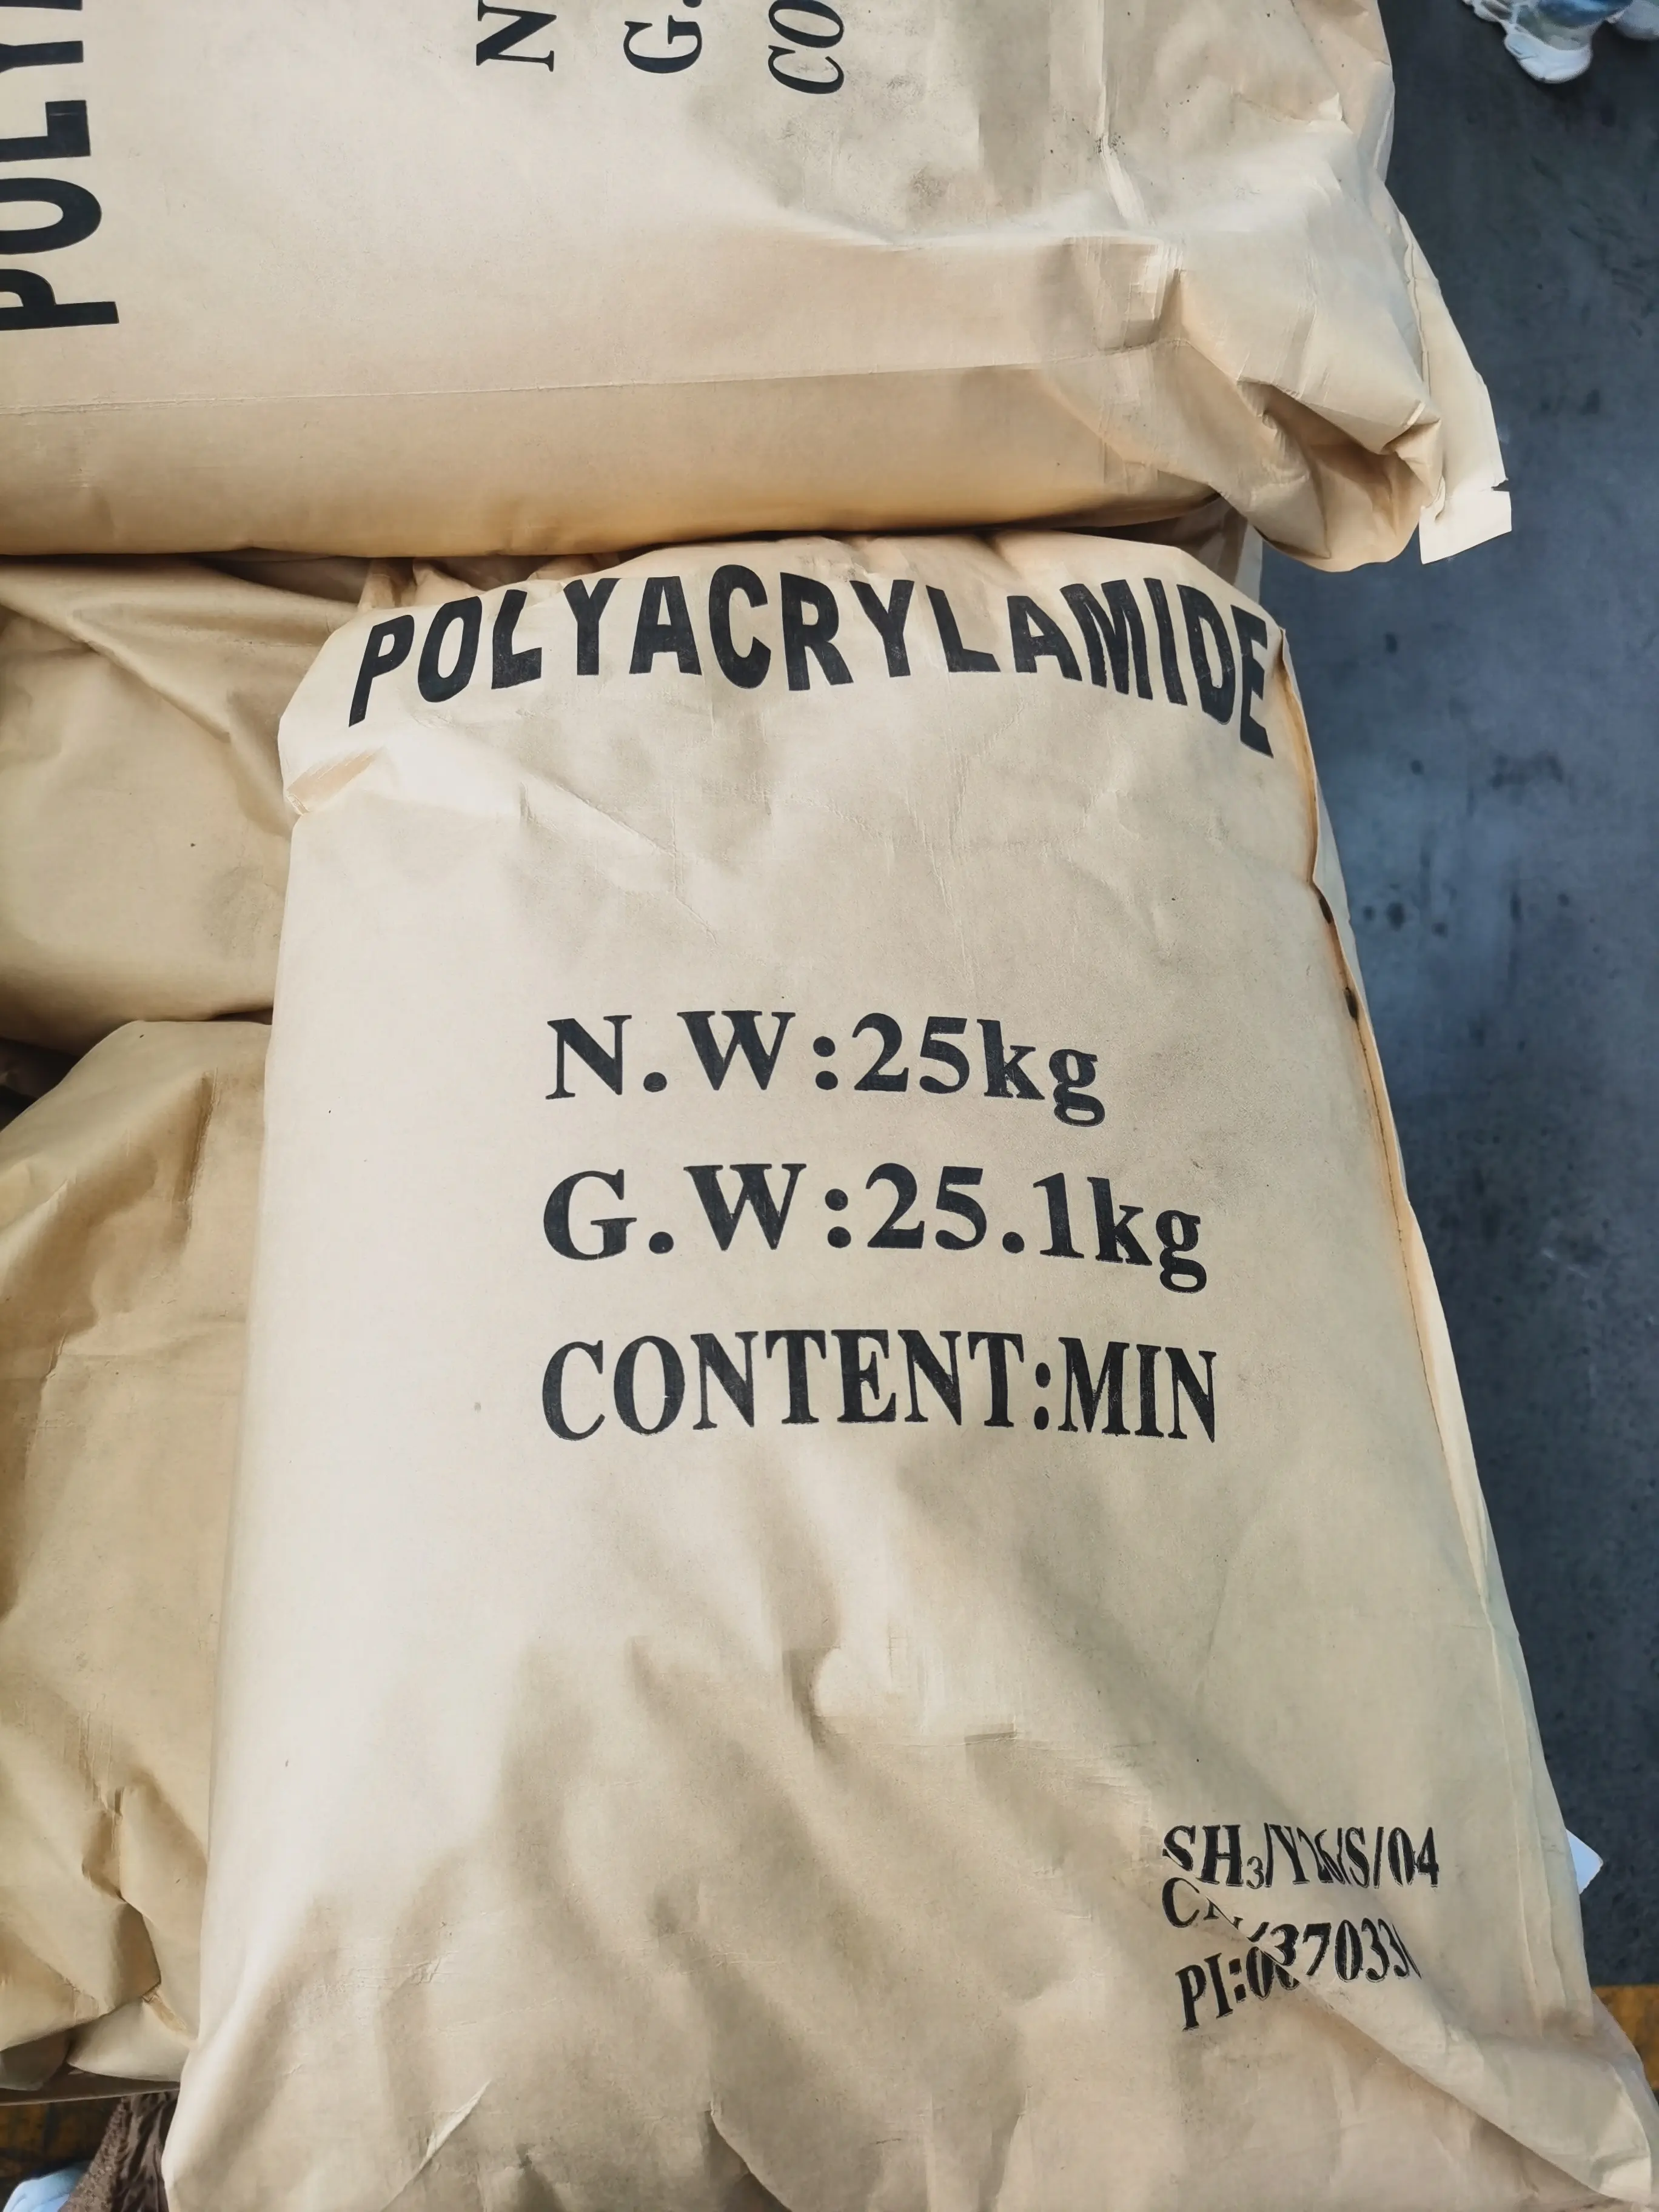 Polyacrylamide anionic polymer polyacrylamide cationic polymer for water treatment polyacrylamide manufacturer